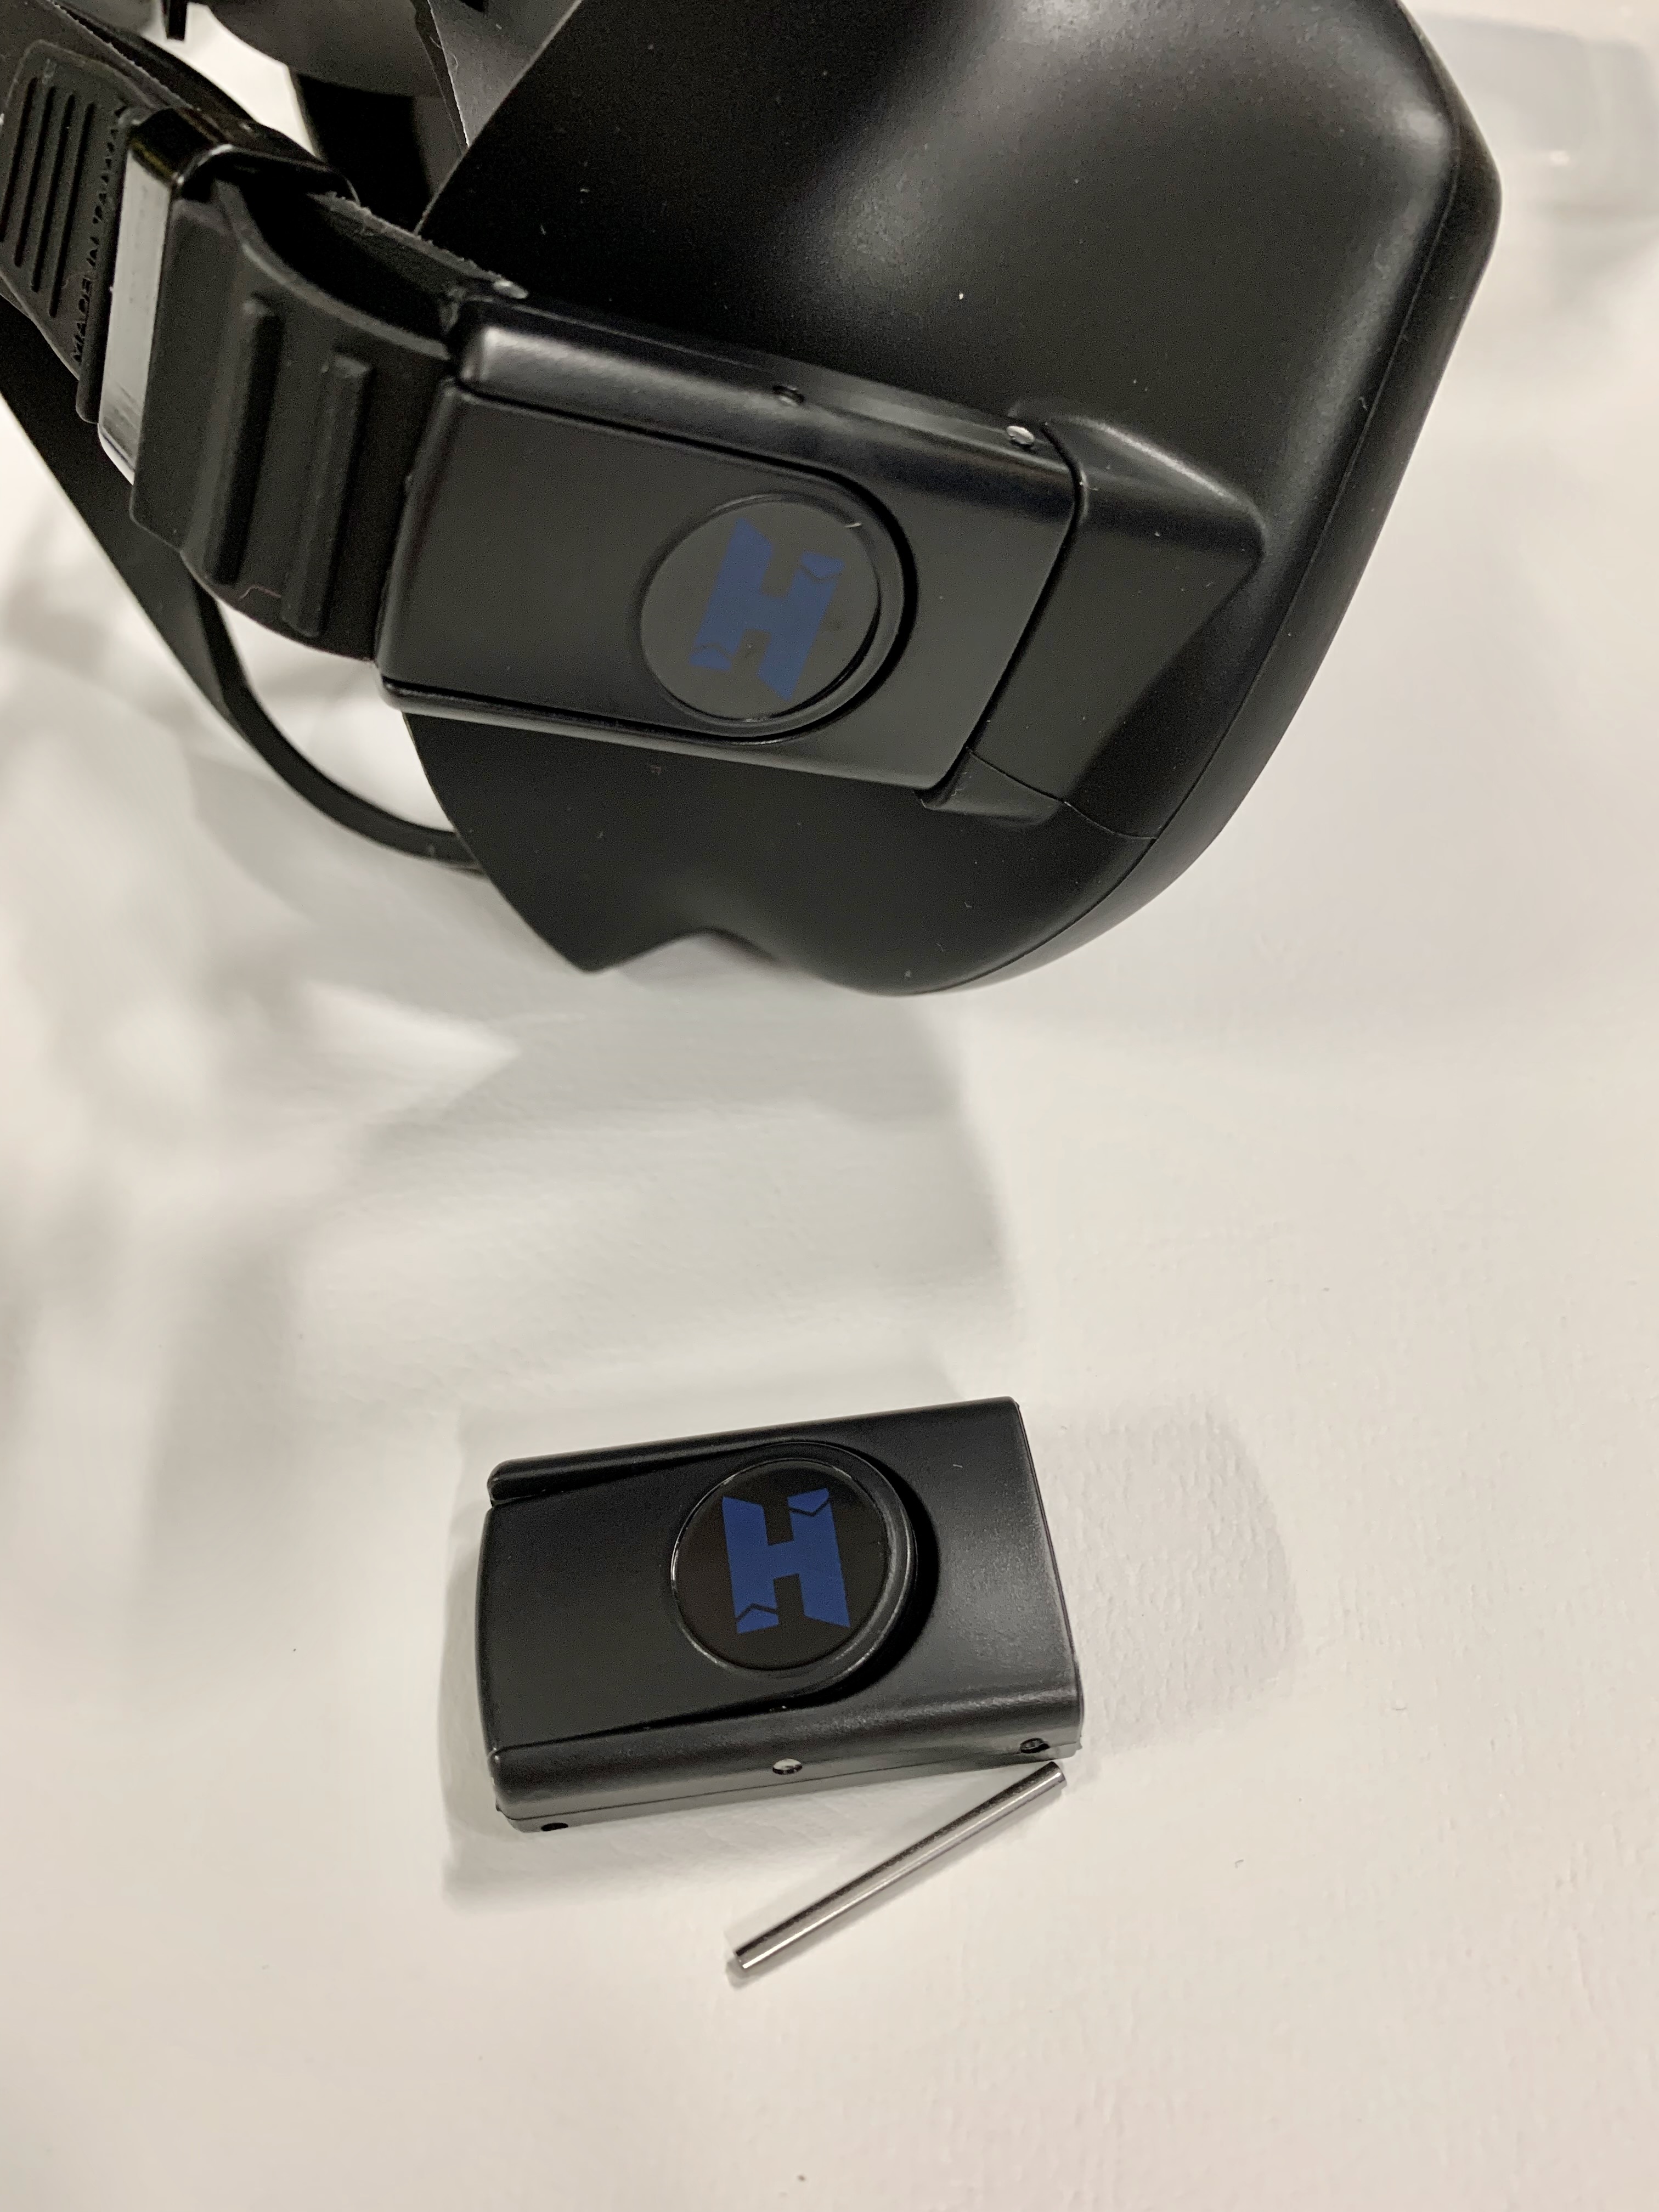 Halcyon Maskenbandhalterung für die "H-View" Maske / Replacement H-View (Black) mask buckle